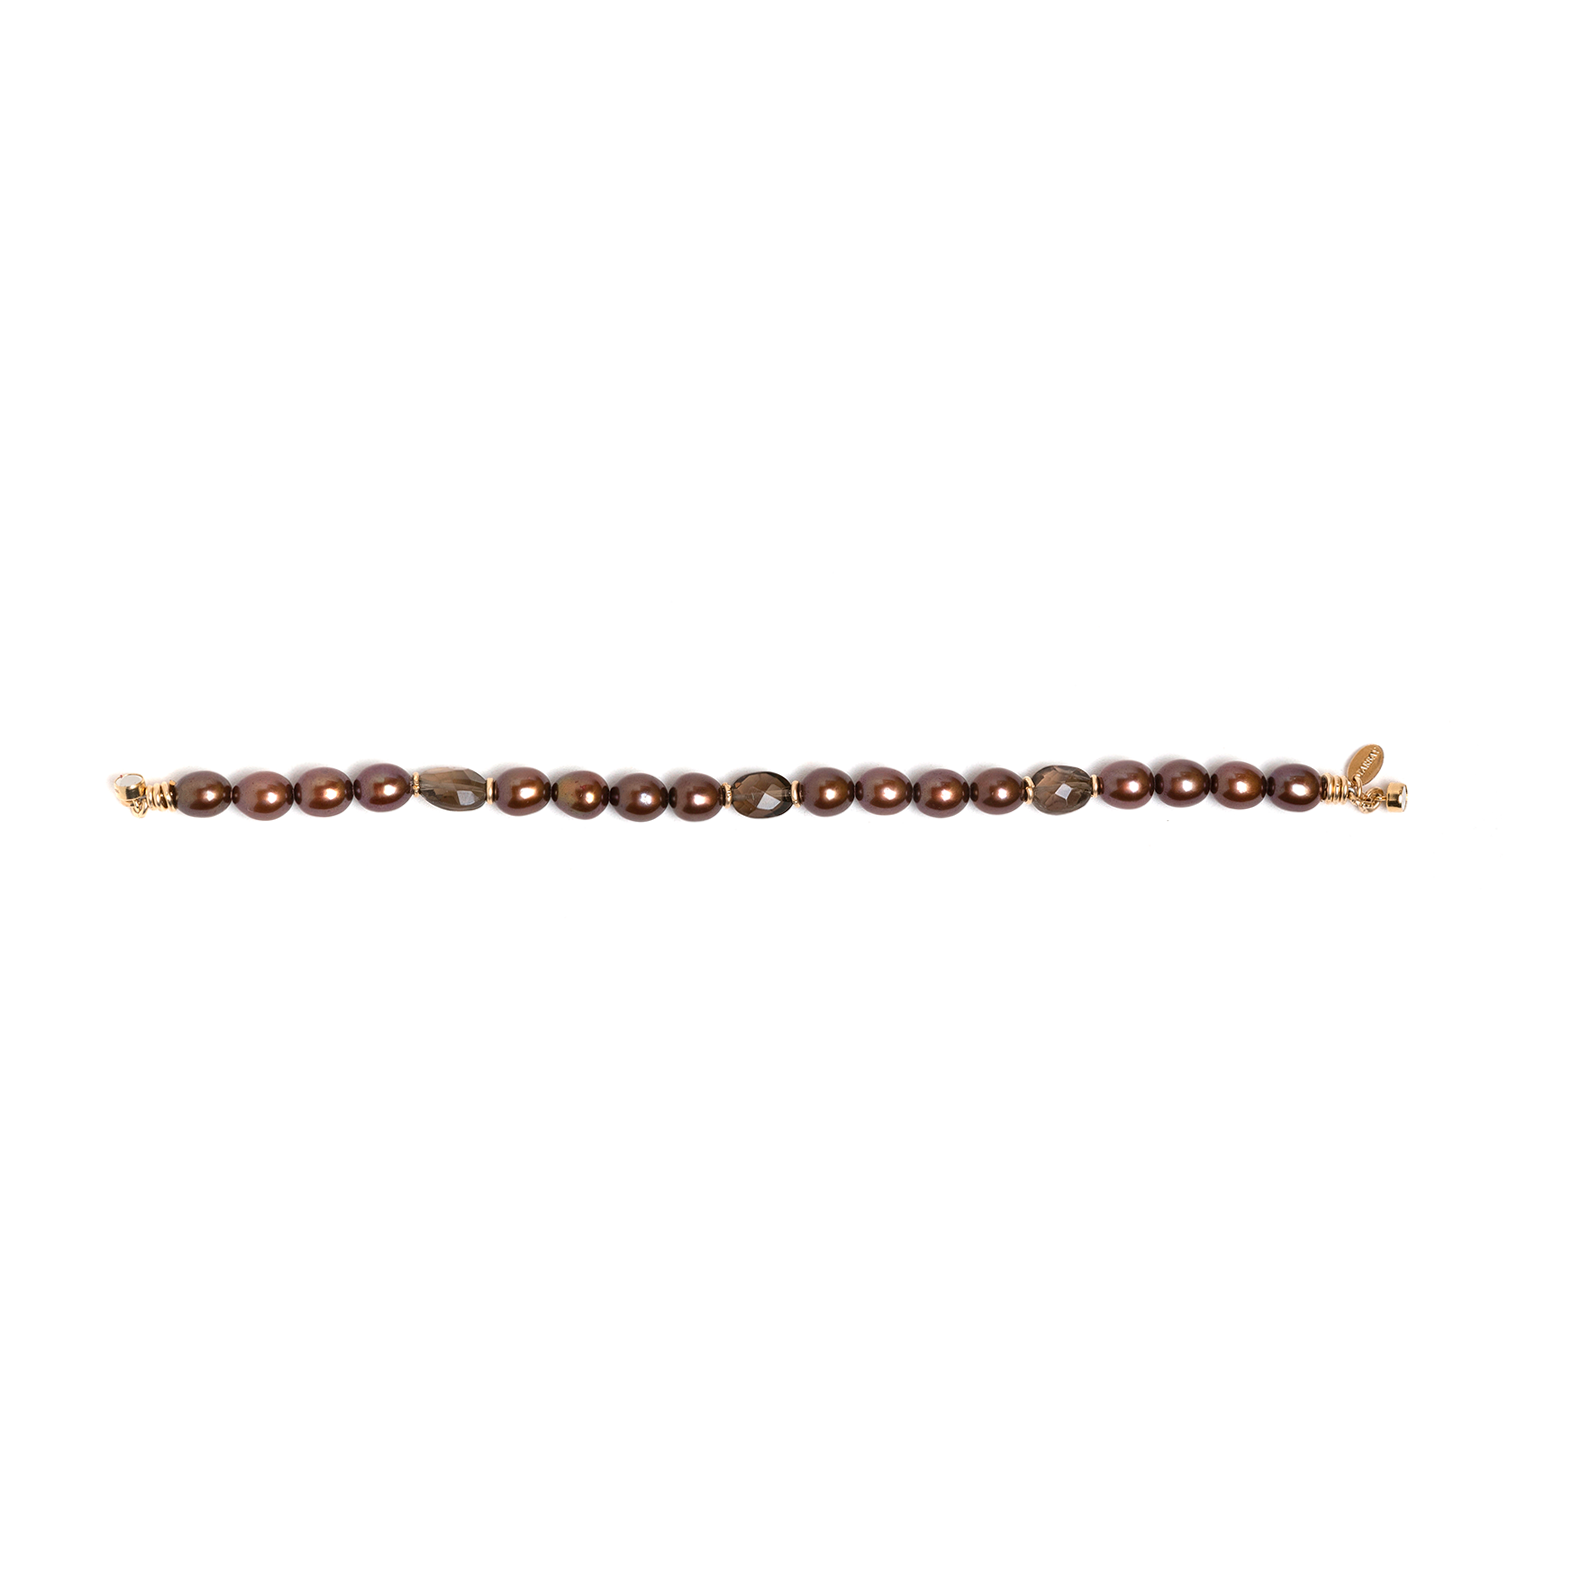 Buruti Bracelet - Brown Pearls, Wine Pearls & Smoky Quartz Bracelets TARBAY   